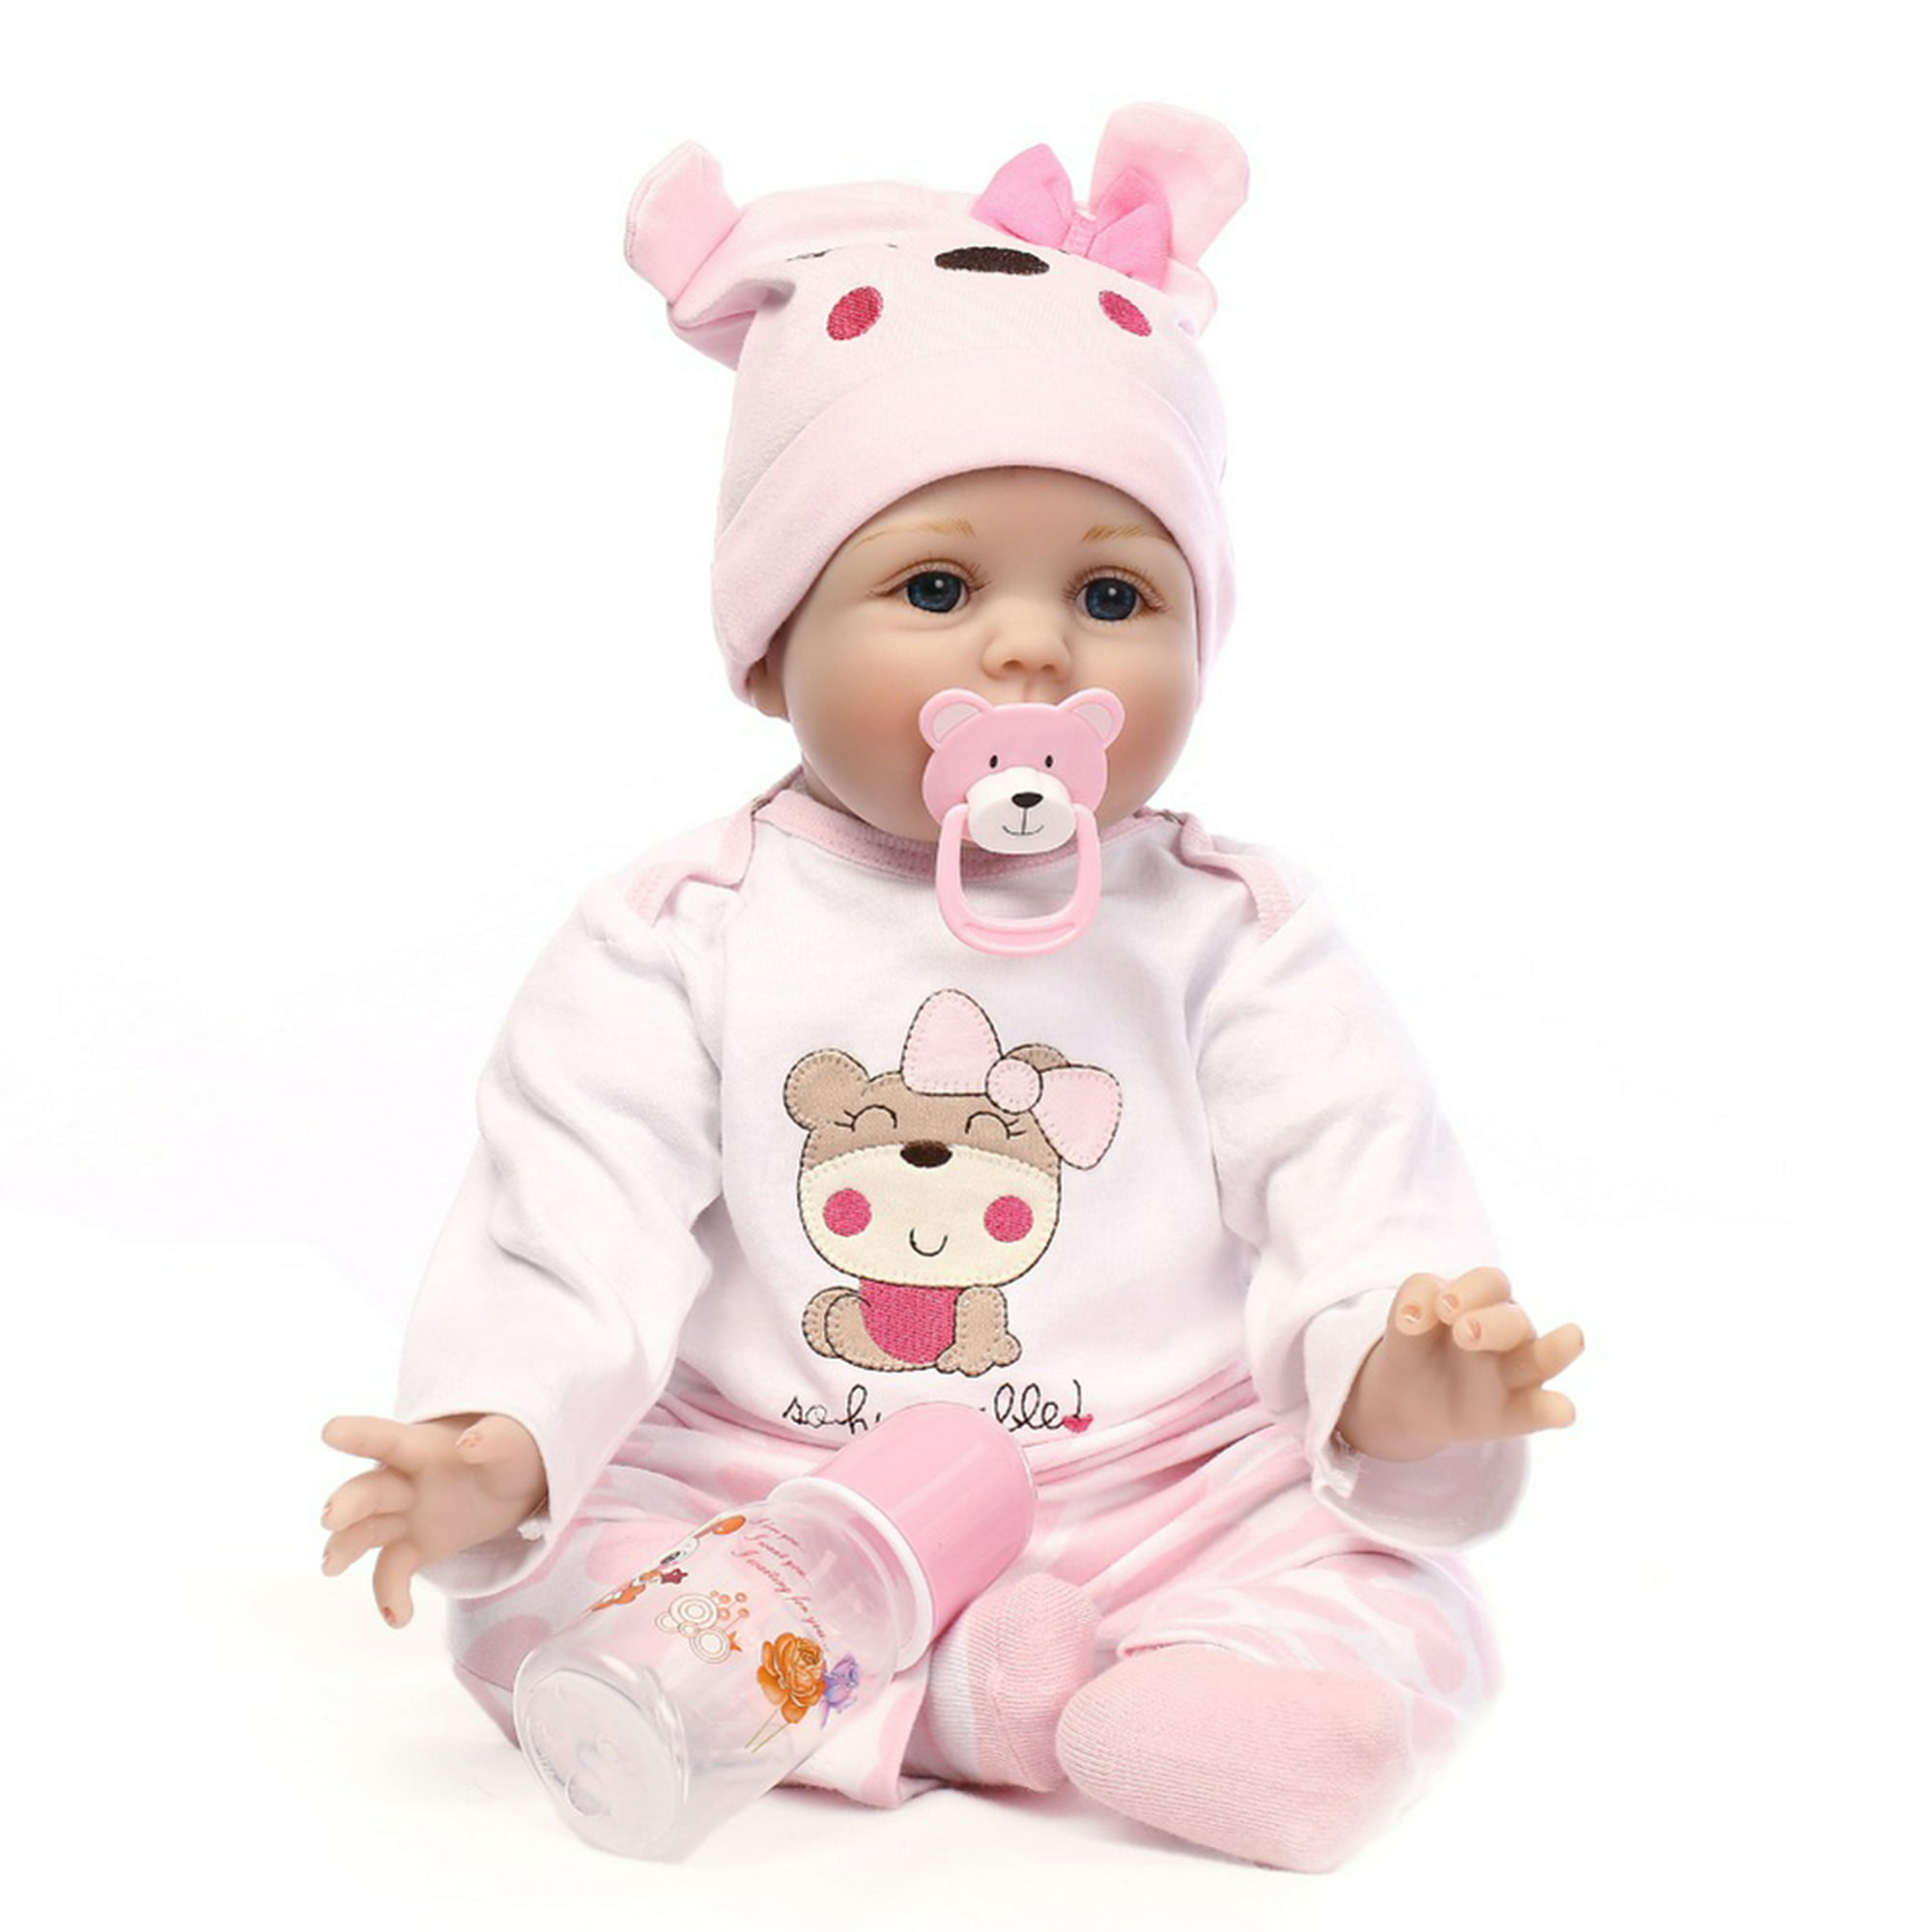 Muñeca Reborn cabeza calva bebé simulación vinilo juguete realista  (Q12G-002C-026) Likrtyny juguetes de los niños